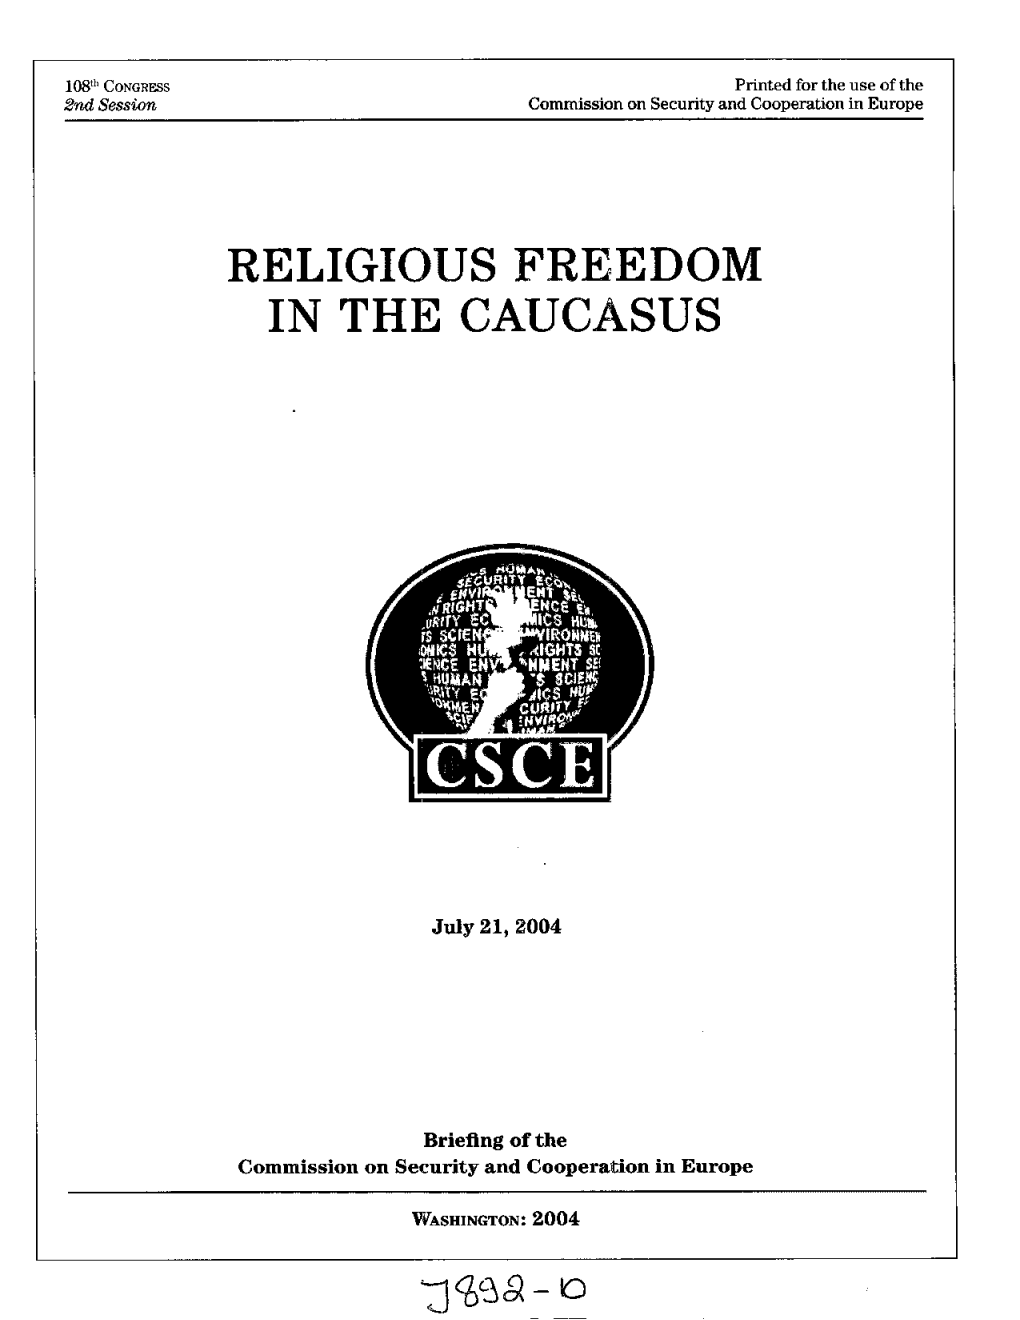 Religious Freedom in the Caucasus